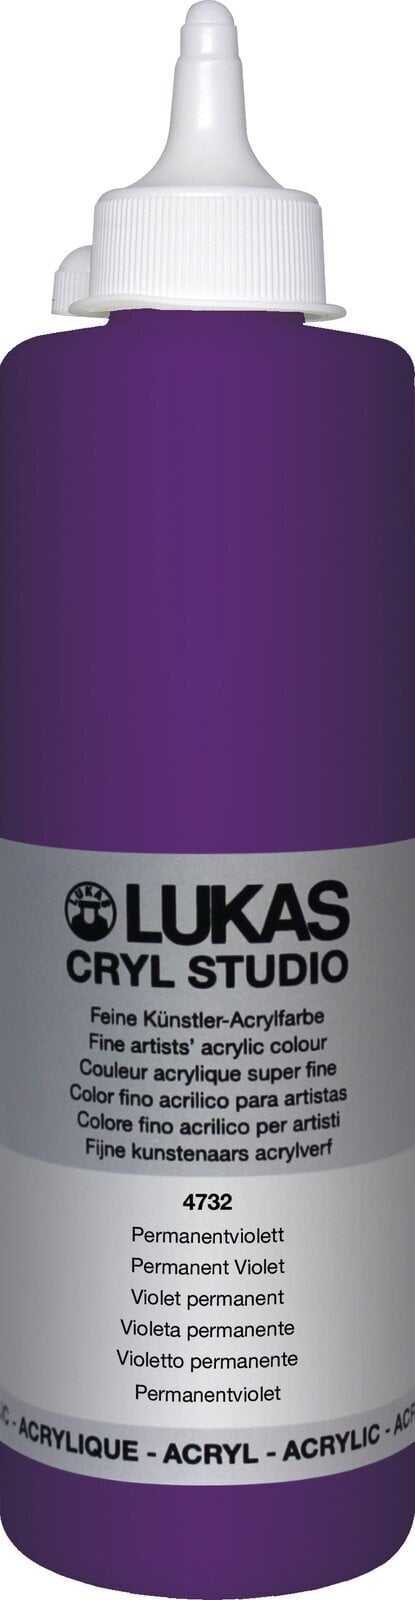 Peinture acrylique Lukas Cryl Studio Acrylic Paint Plastic Bottle Peinture acrylique Permanent Violet 500 ml 1 pc